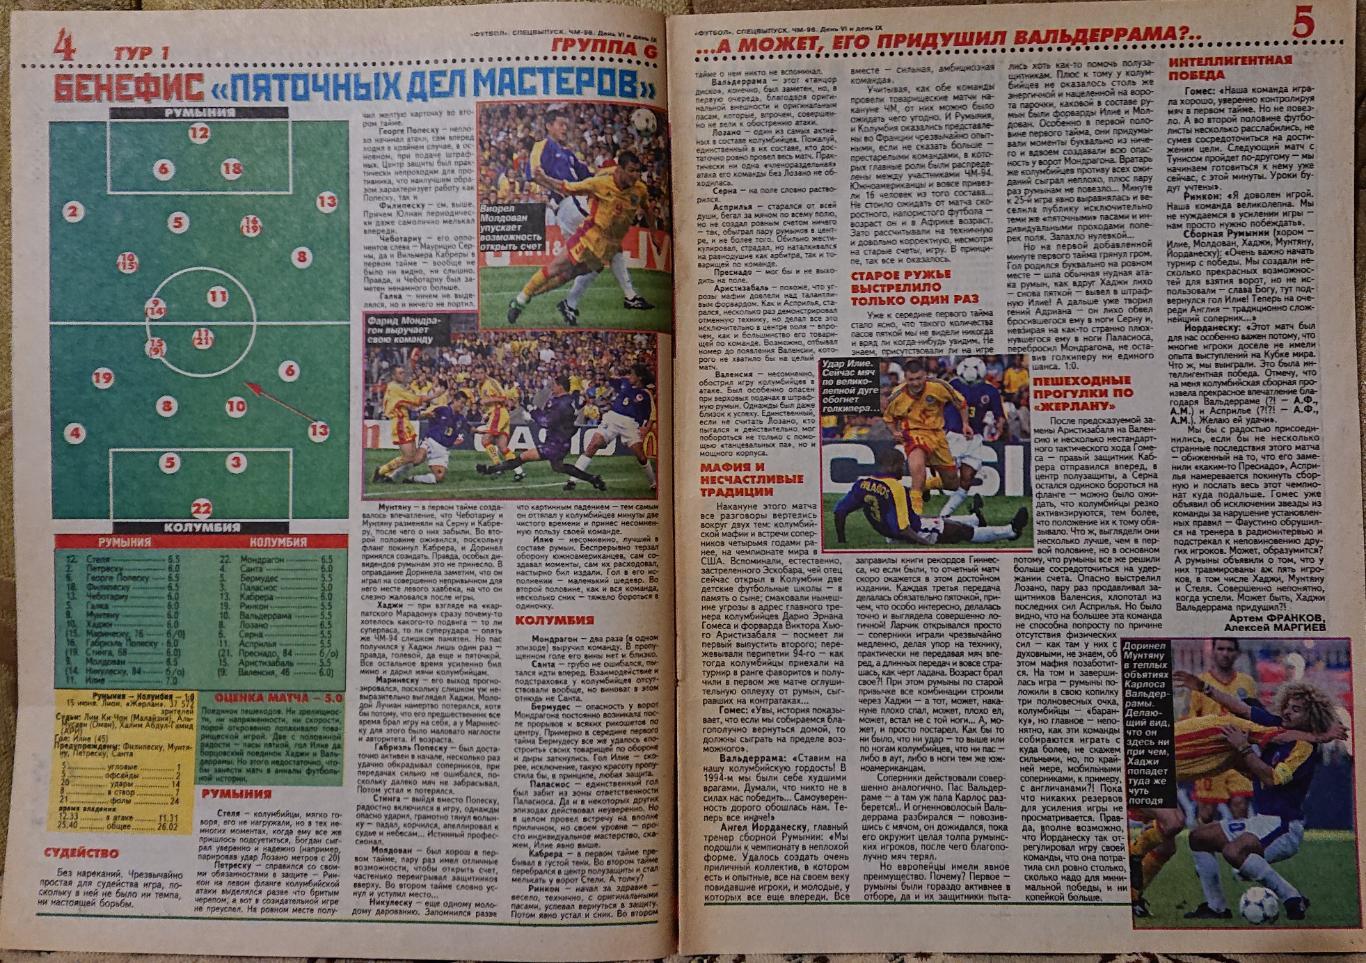 Футбол.Журнал. Спецвипуск.Чемпіонат світу 1998. 1